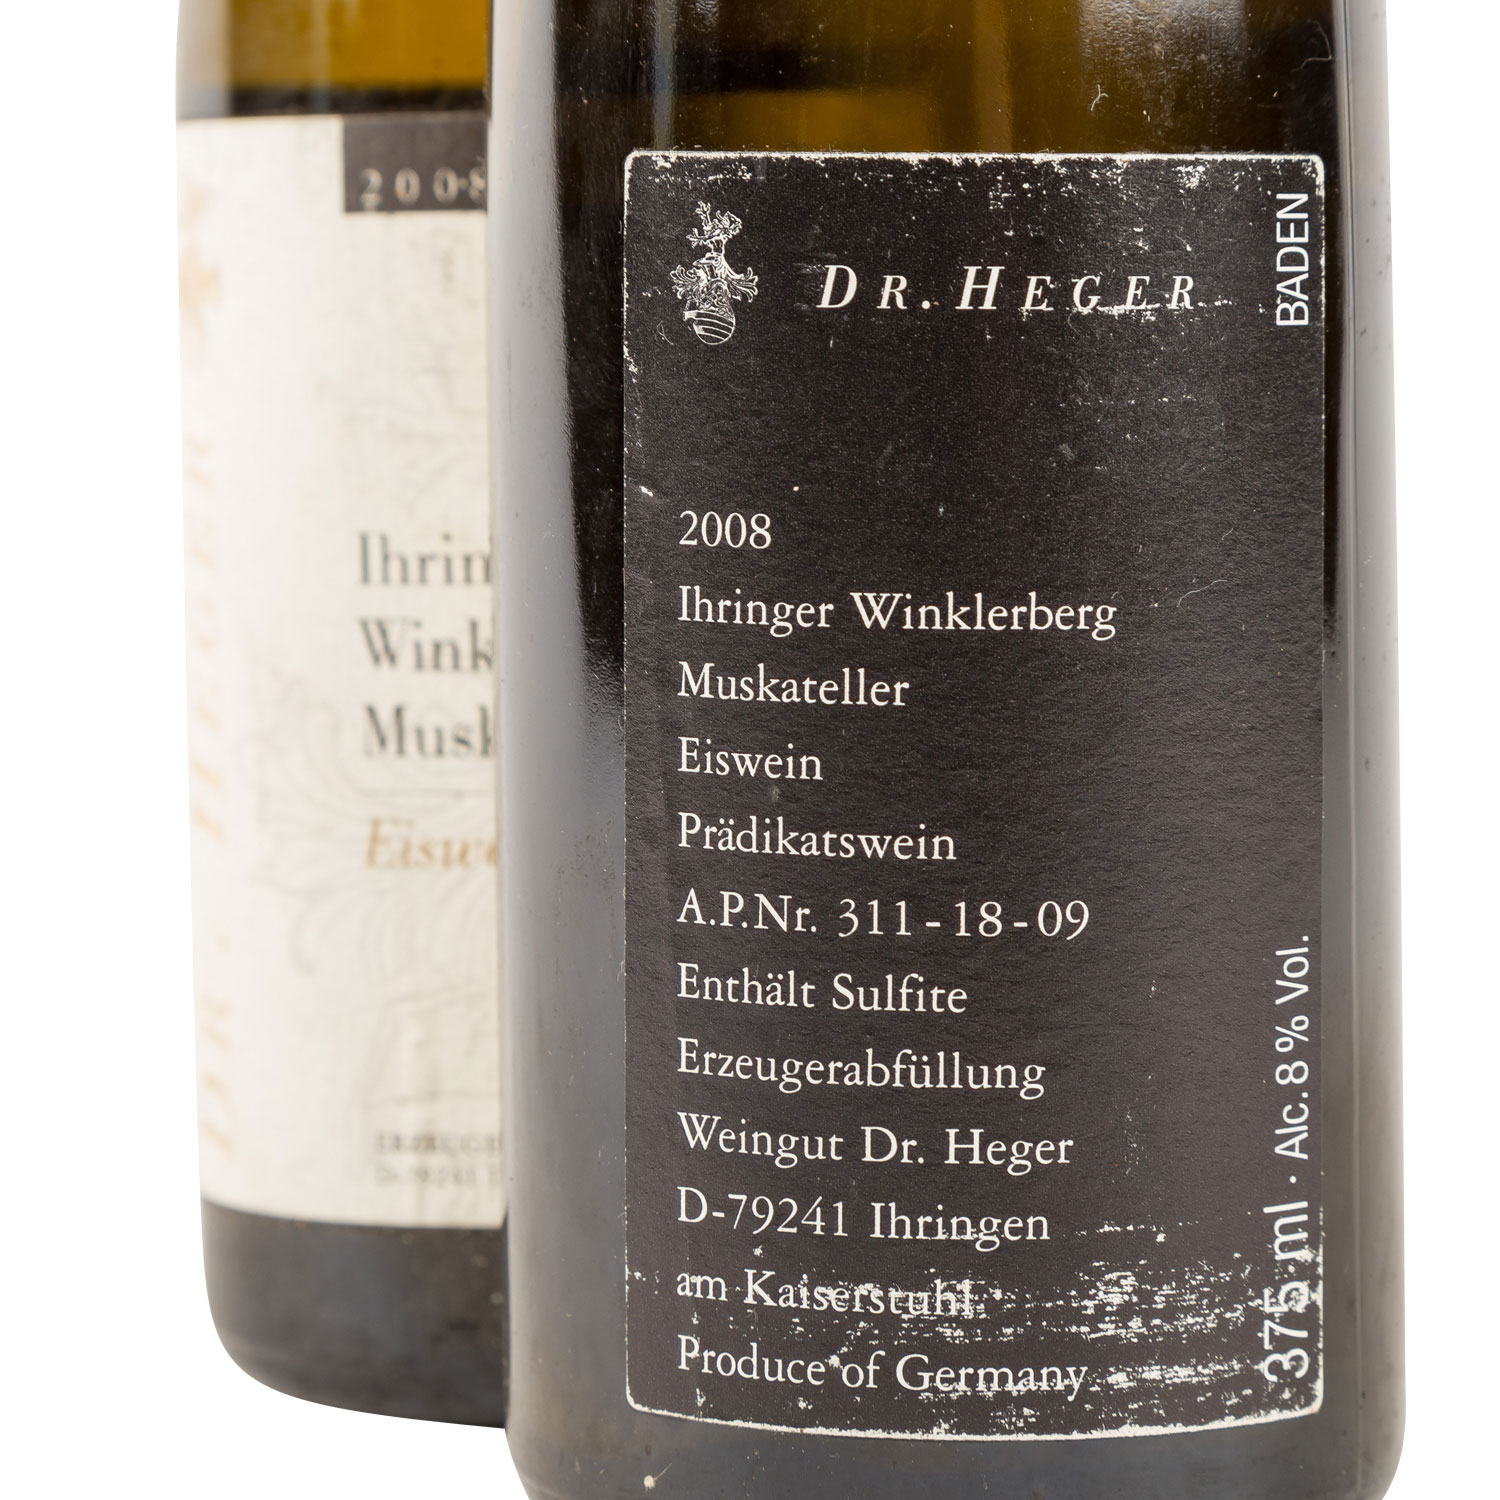 WEINGUT DR. HEGER 2 Flaschen "Ihringer Winkelerger Eiswein" 2008 - Image 4 of 5